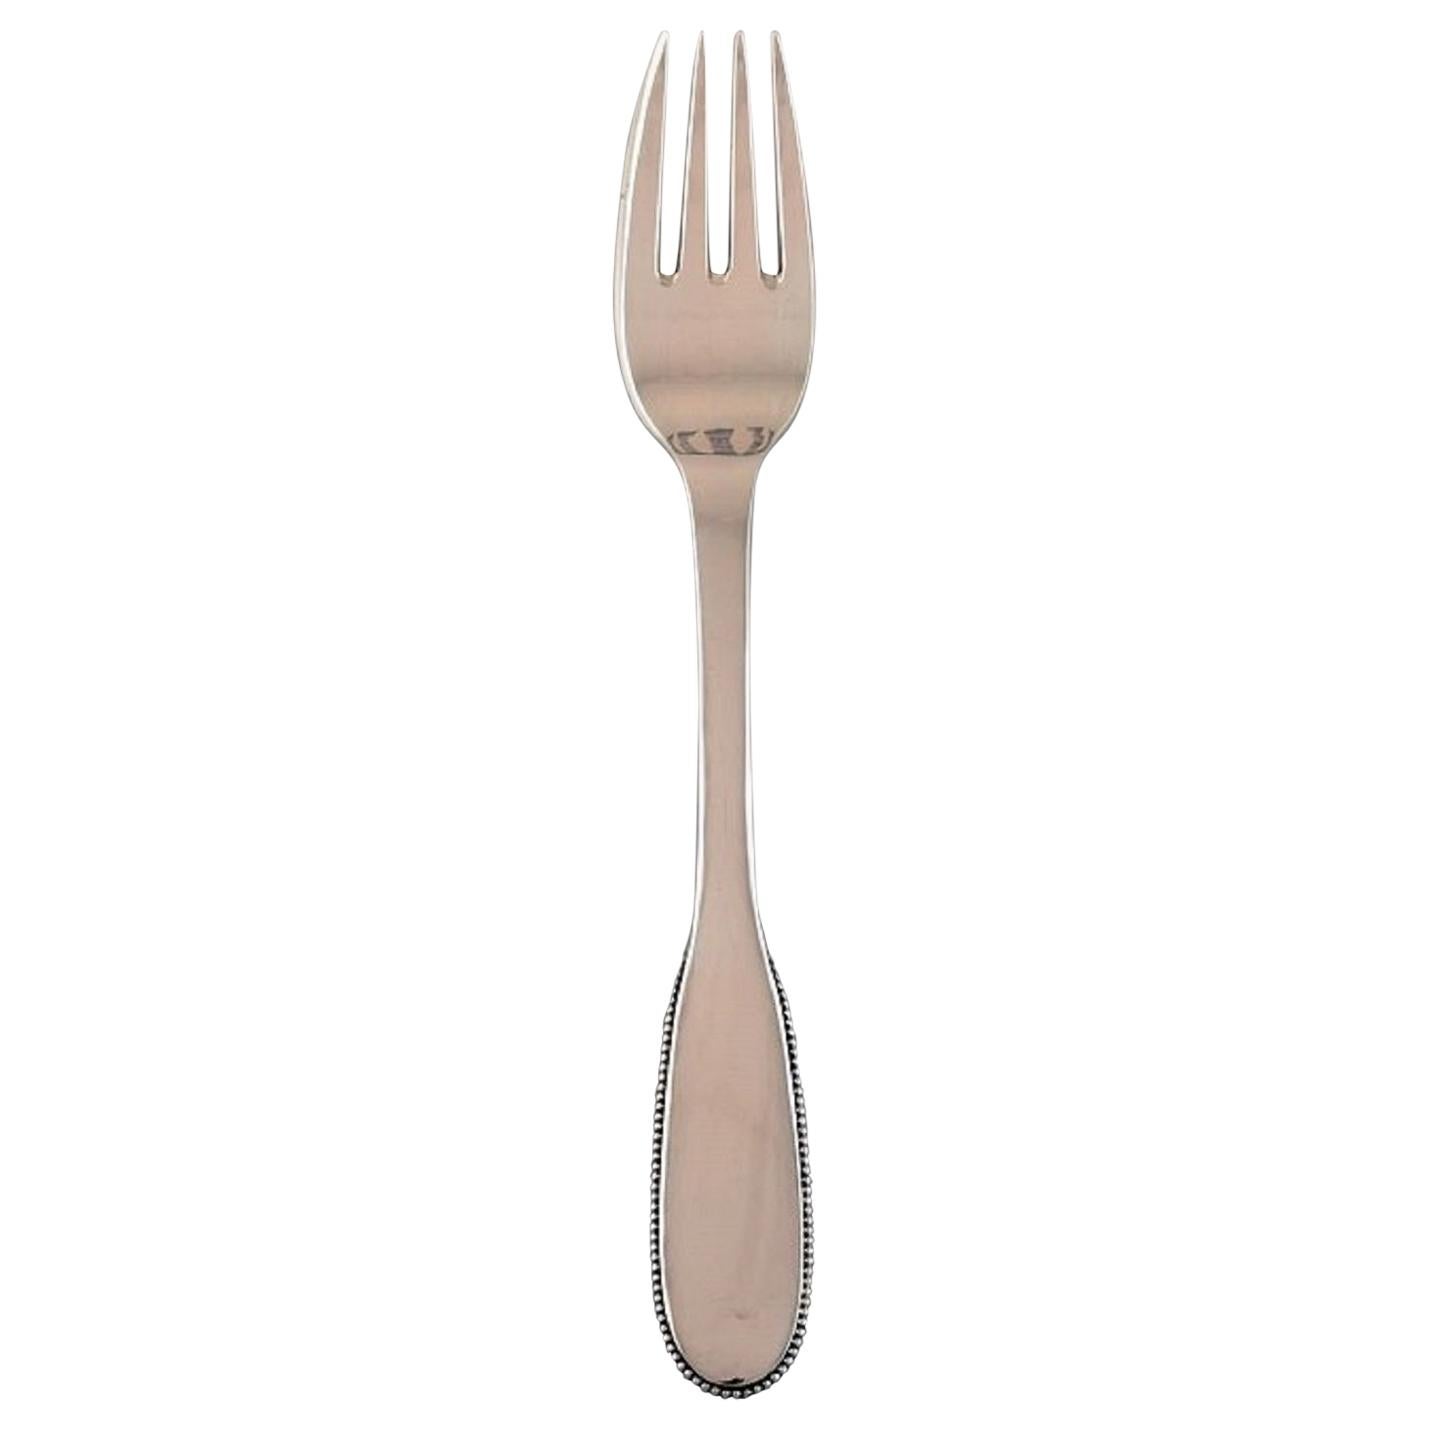 Evald Nielsen Number 14 Lunch Fork in Hammered Silver, 1920s